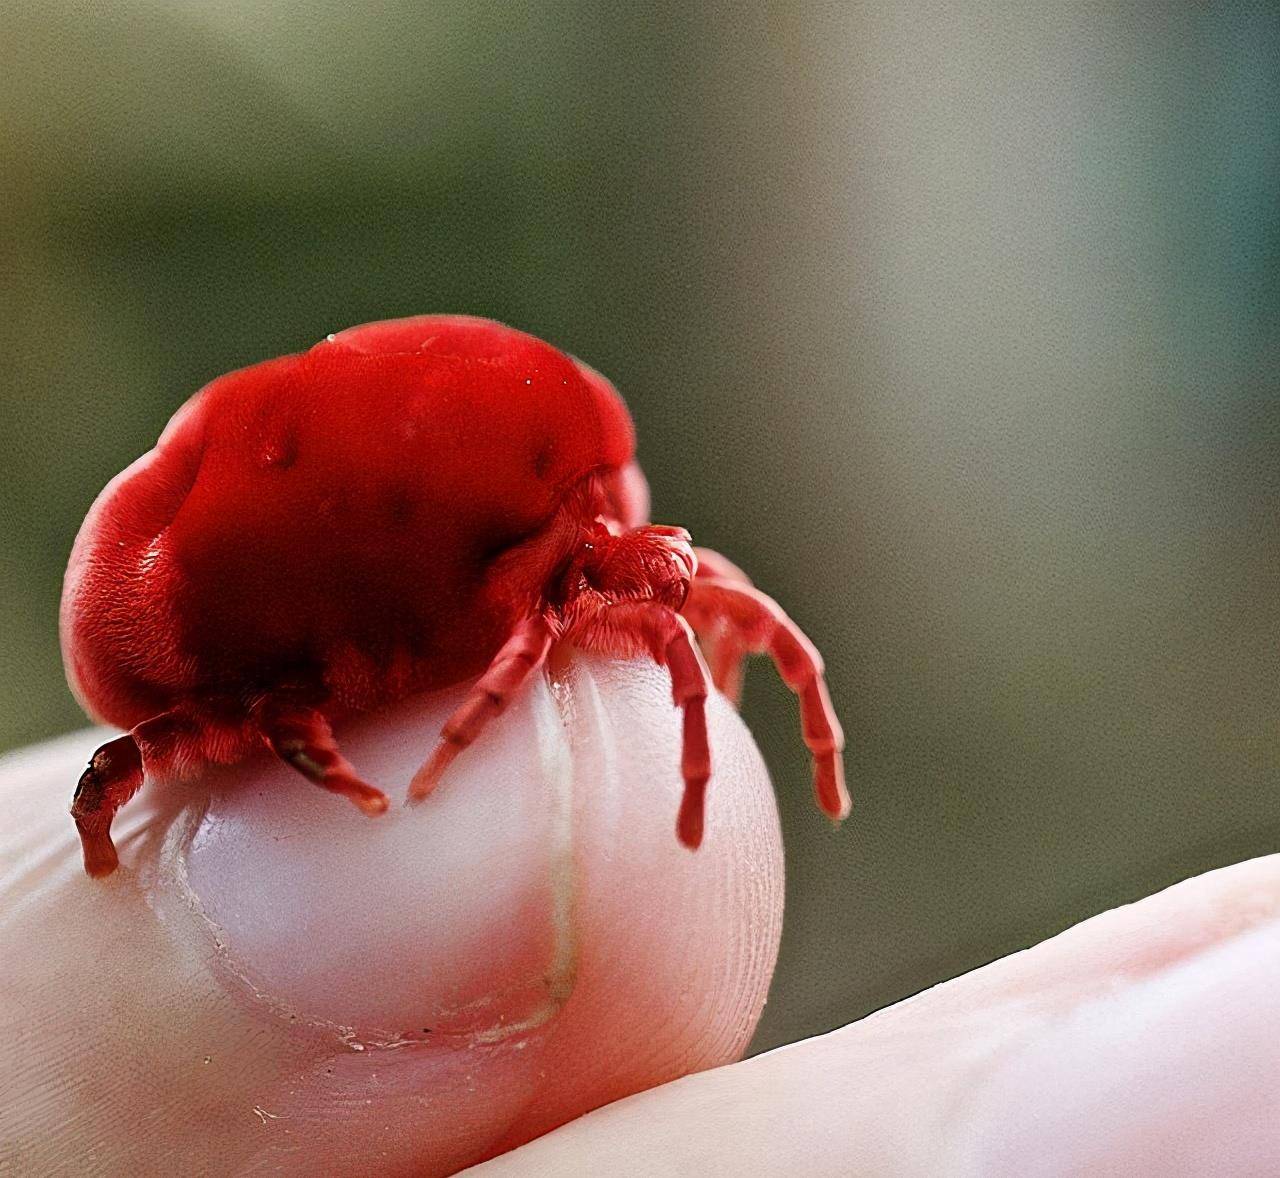 大点的红色天鹅绒螨也仅有2厘米,对比它的外观更容易让人接受螨与蜘蛛